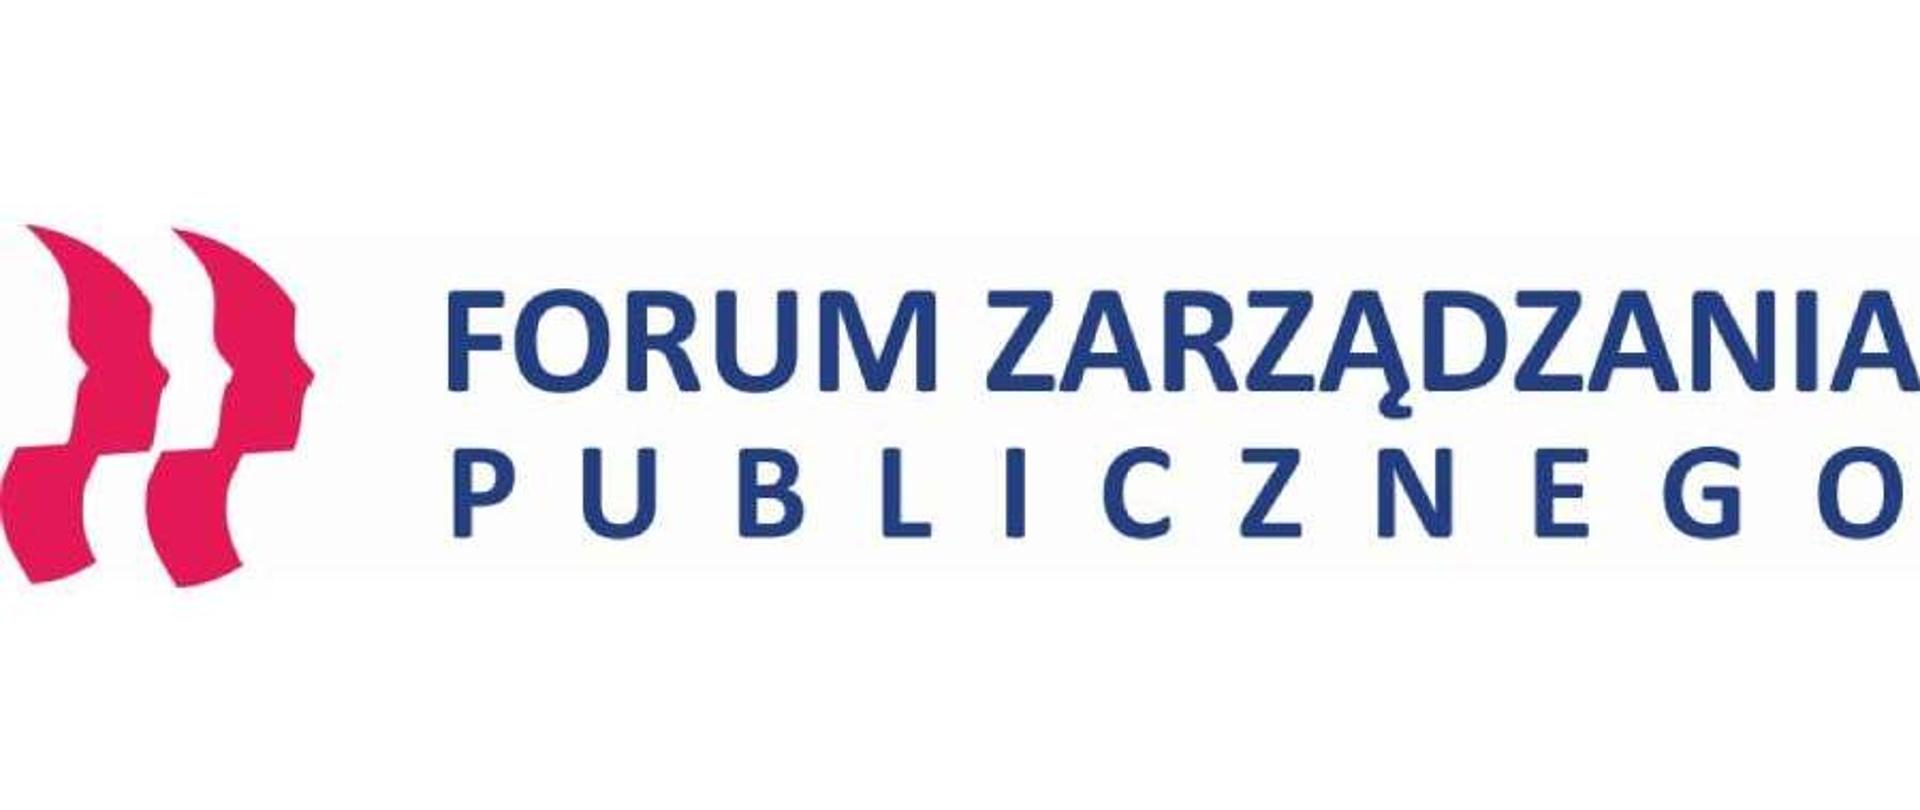 Logo Forum Zarządzania Publicznego - po lewej stronie profil ludzkiej twarzy, powtórzony czterokrotnie, w naprzemiennym szyku, biały, czerwony, biały, czerwony; obok napis Forum Zarządzania publicznego